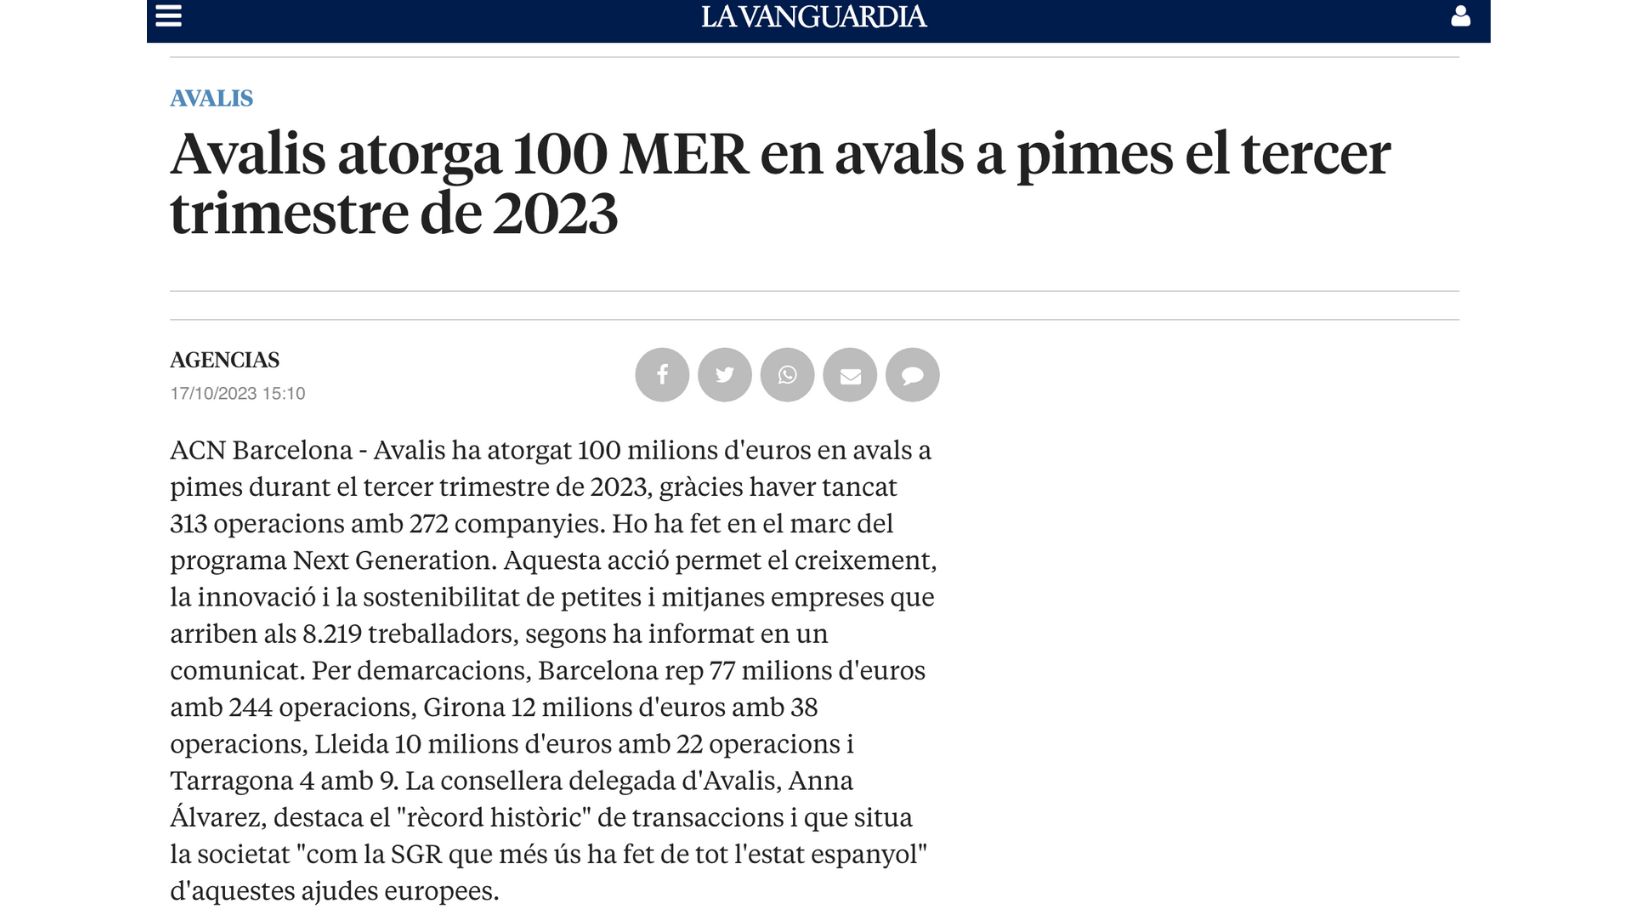 La Vanguardia publica la información de los avales ortagados por Avalis